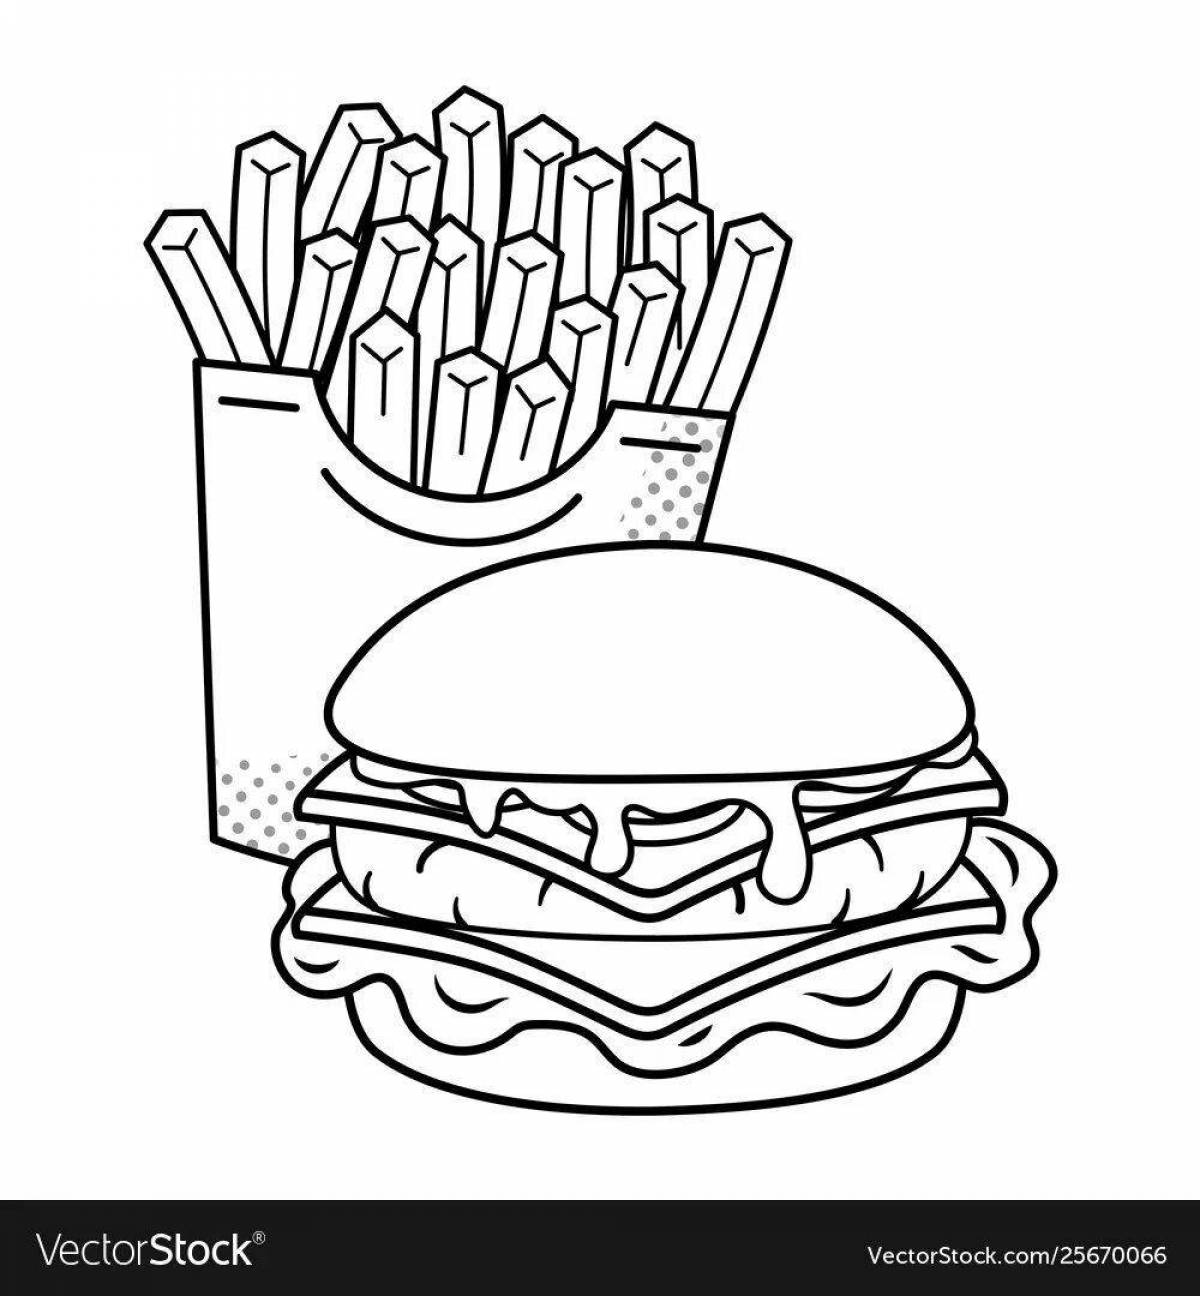 Восхитительная страница раскраски burger king